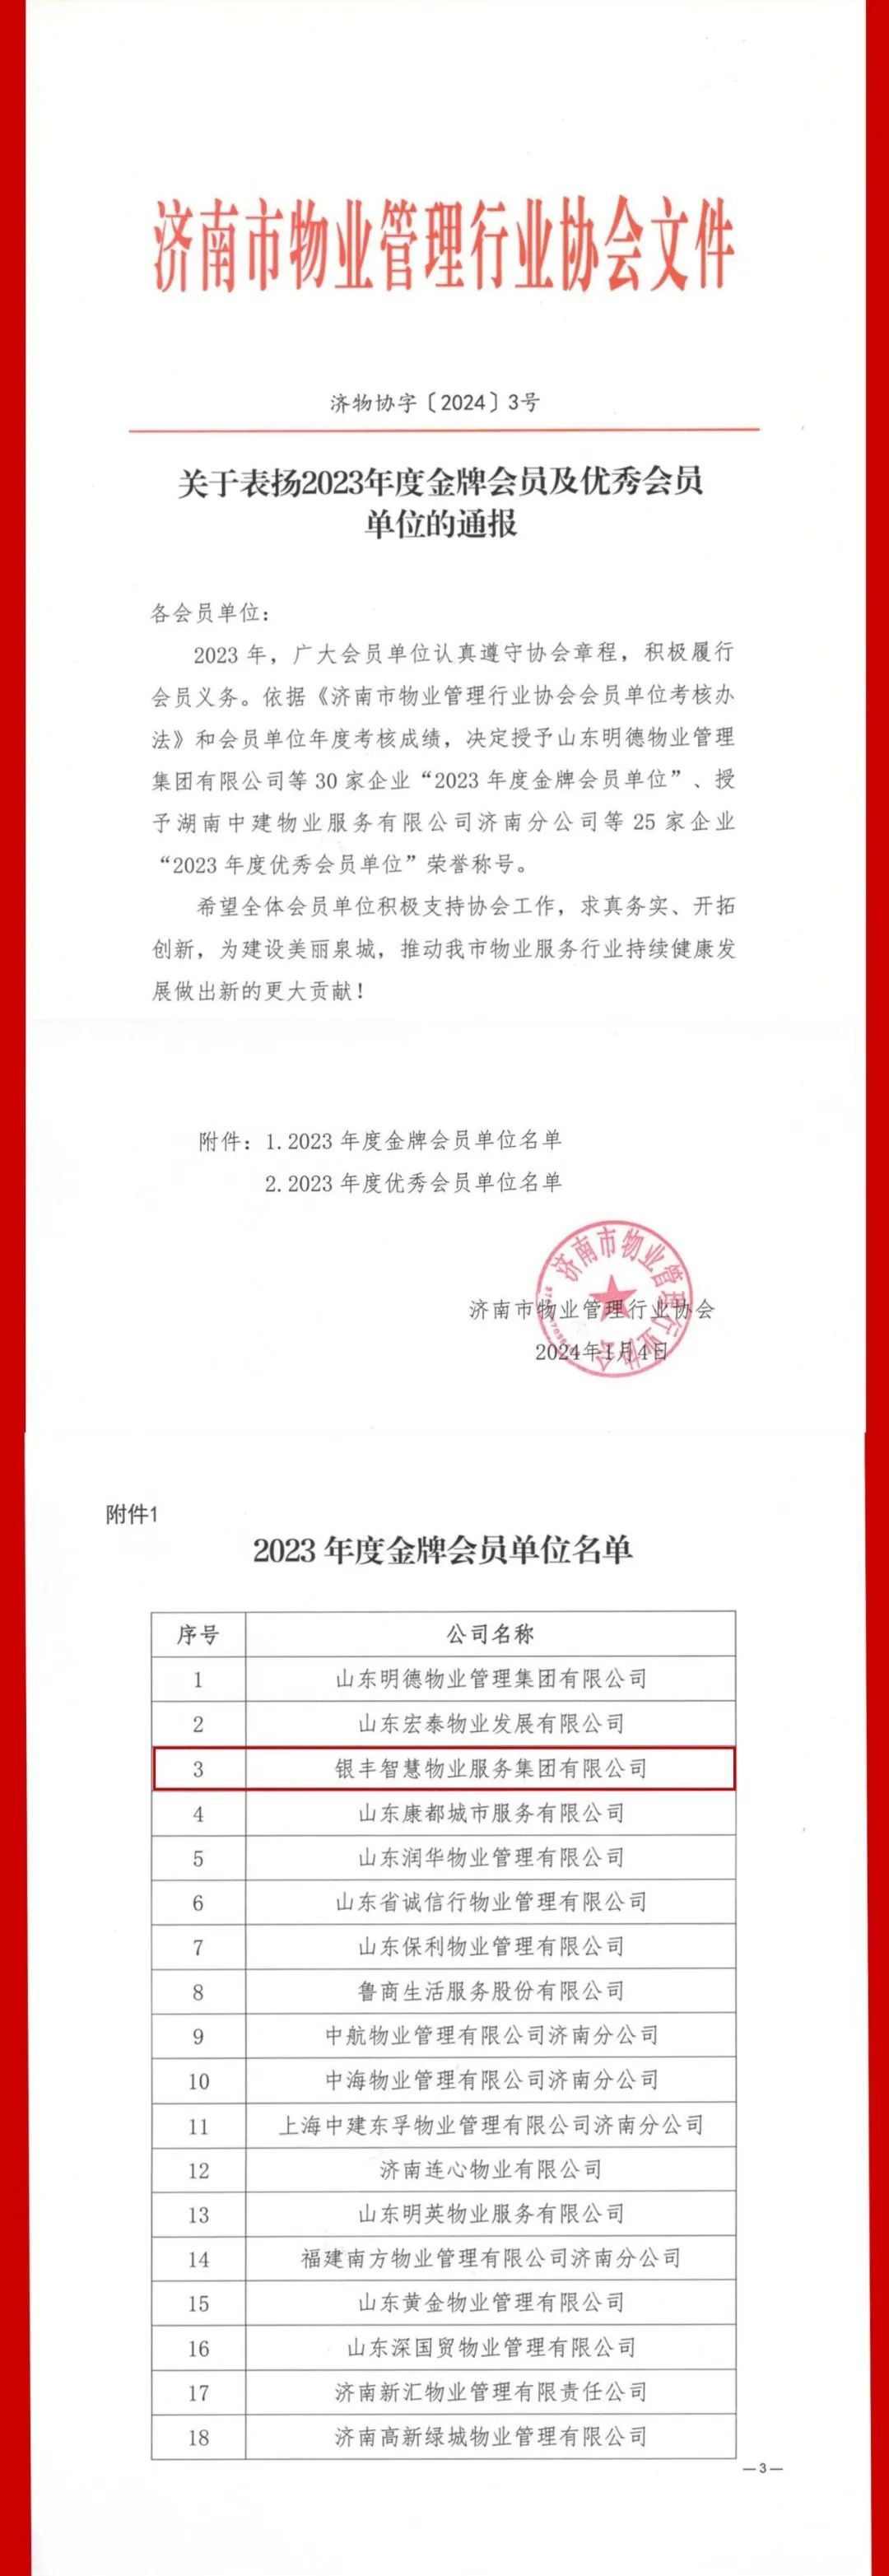 银丰物业荣获济南市物业管理行业协会“金牌会员单位”荣誉